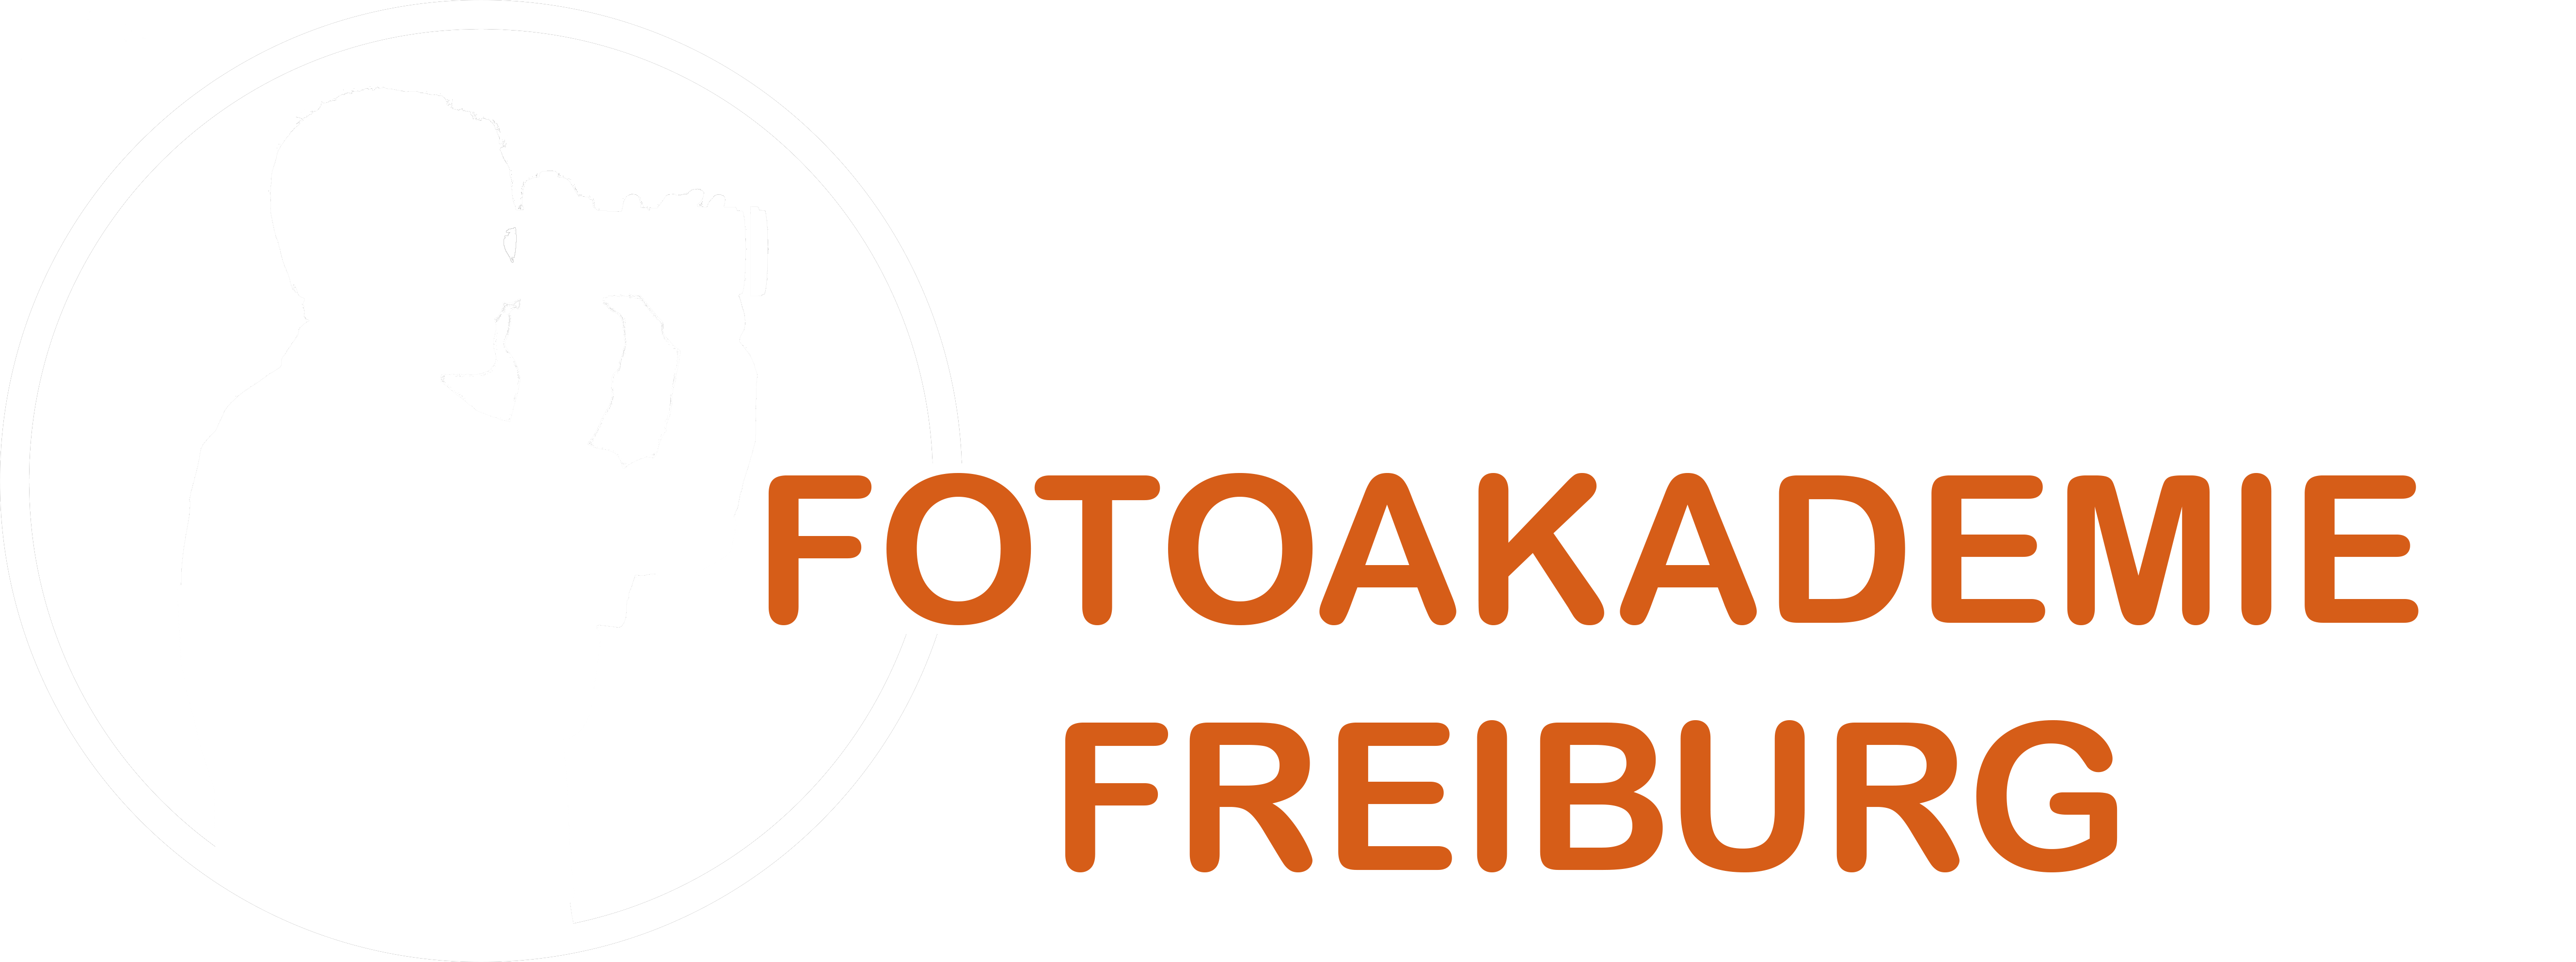 Fotoakademie Freiburg